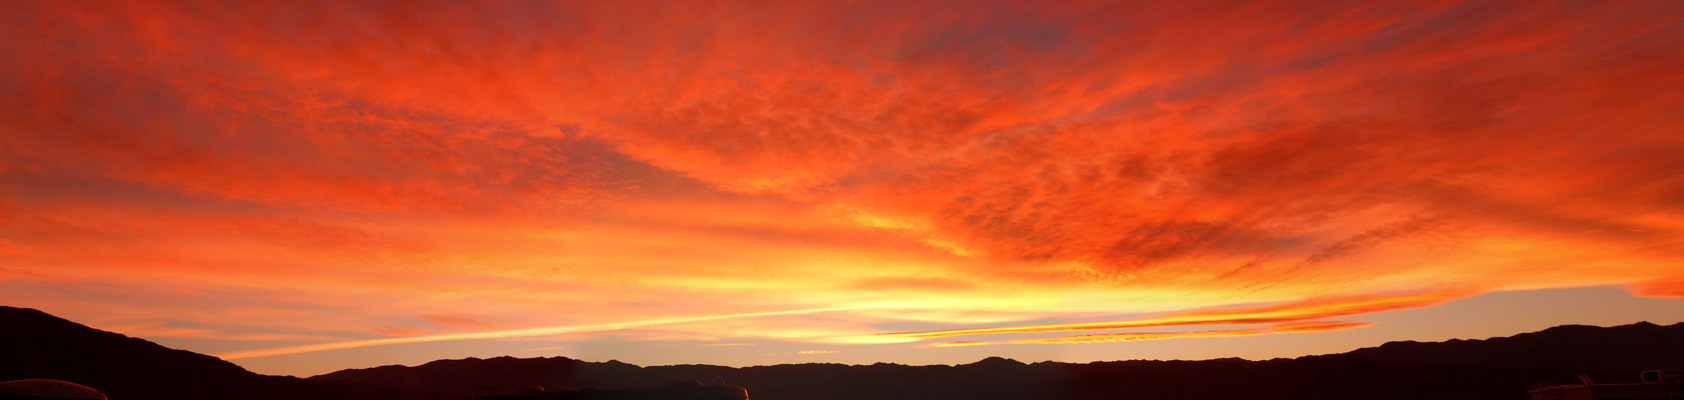 Orange Sunset at Death Valley CA